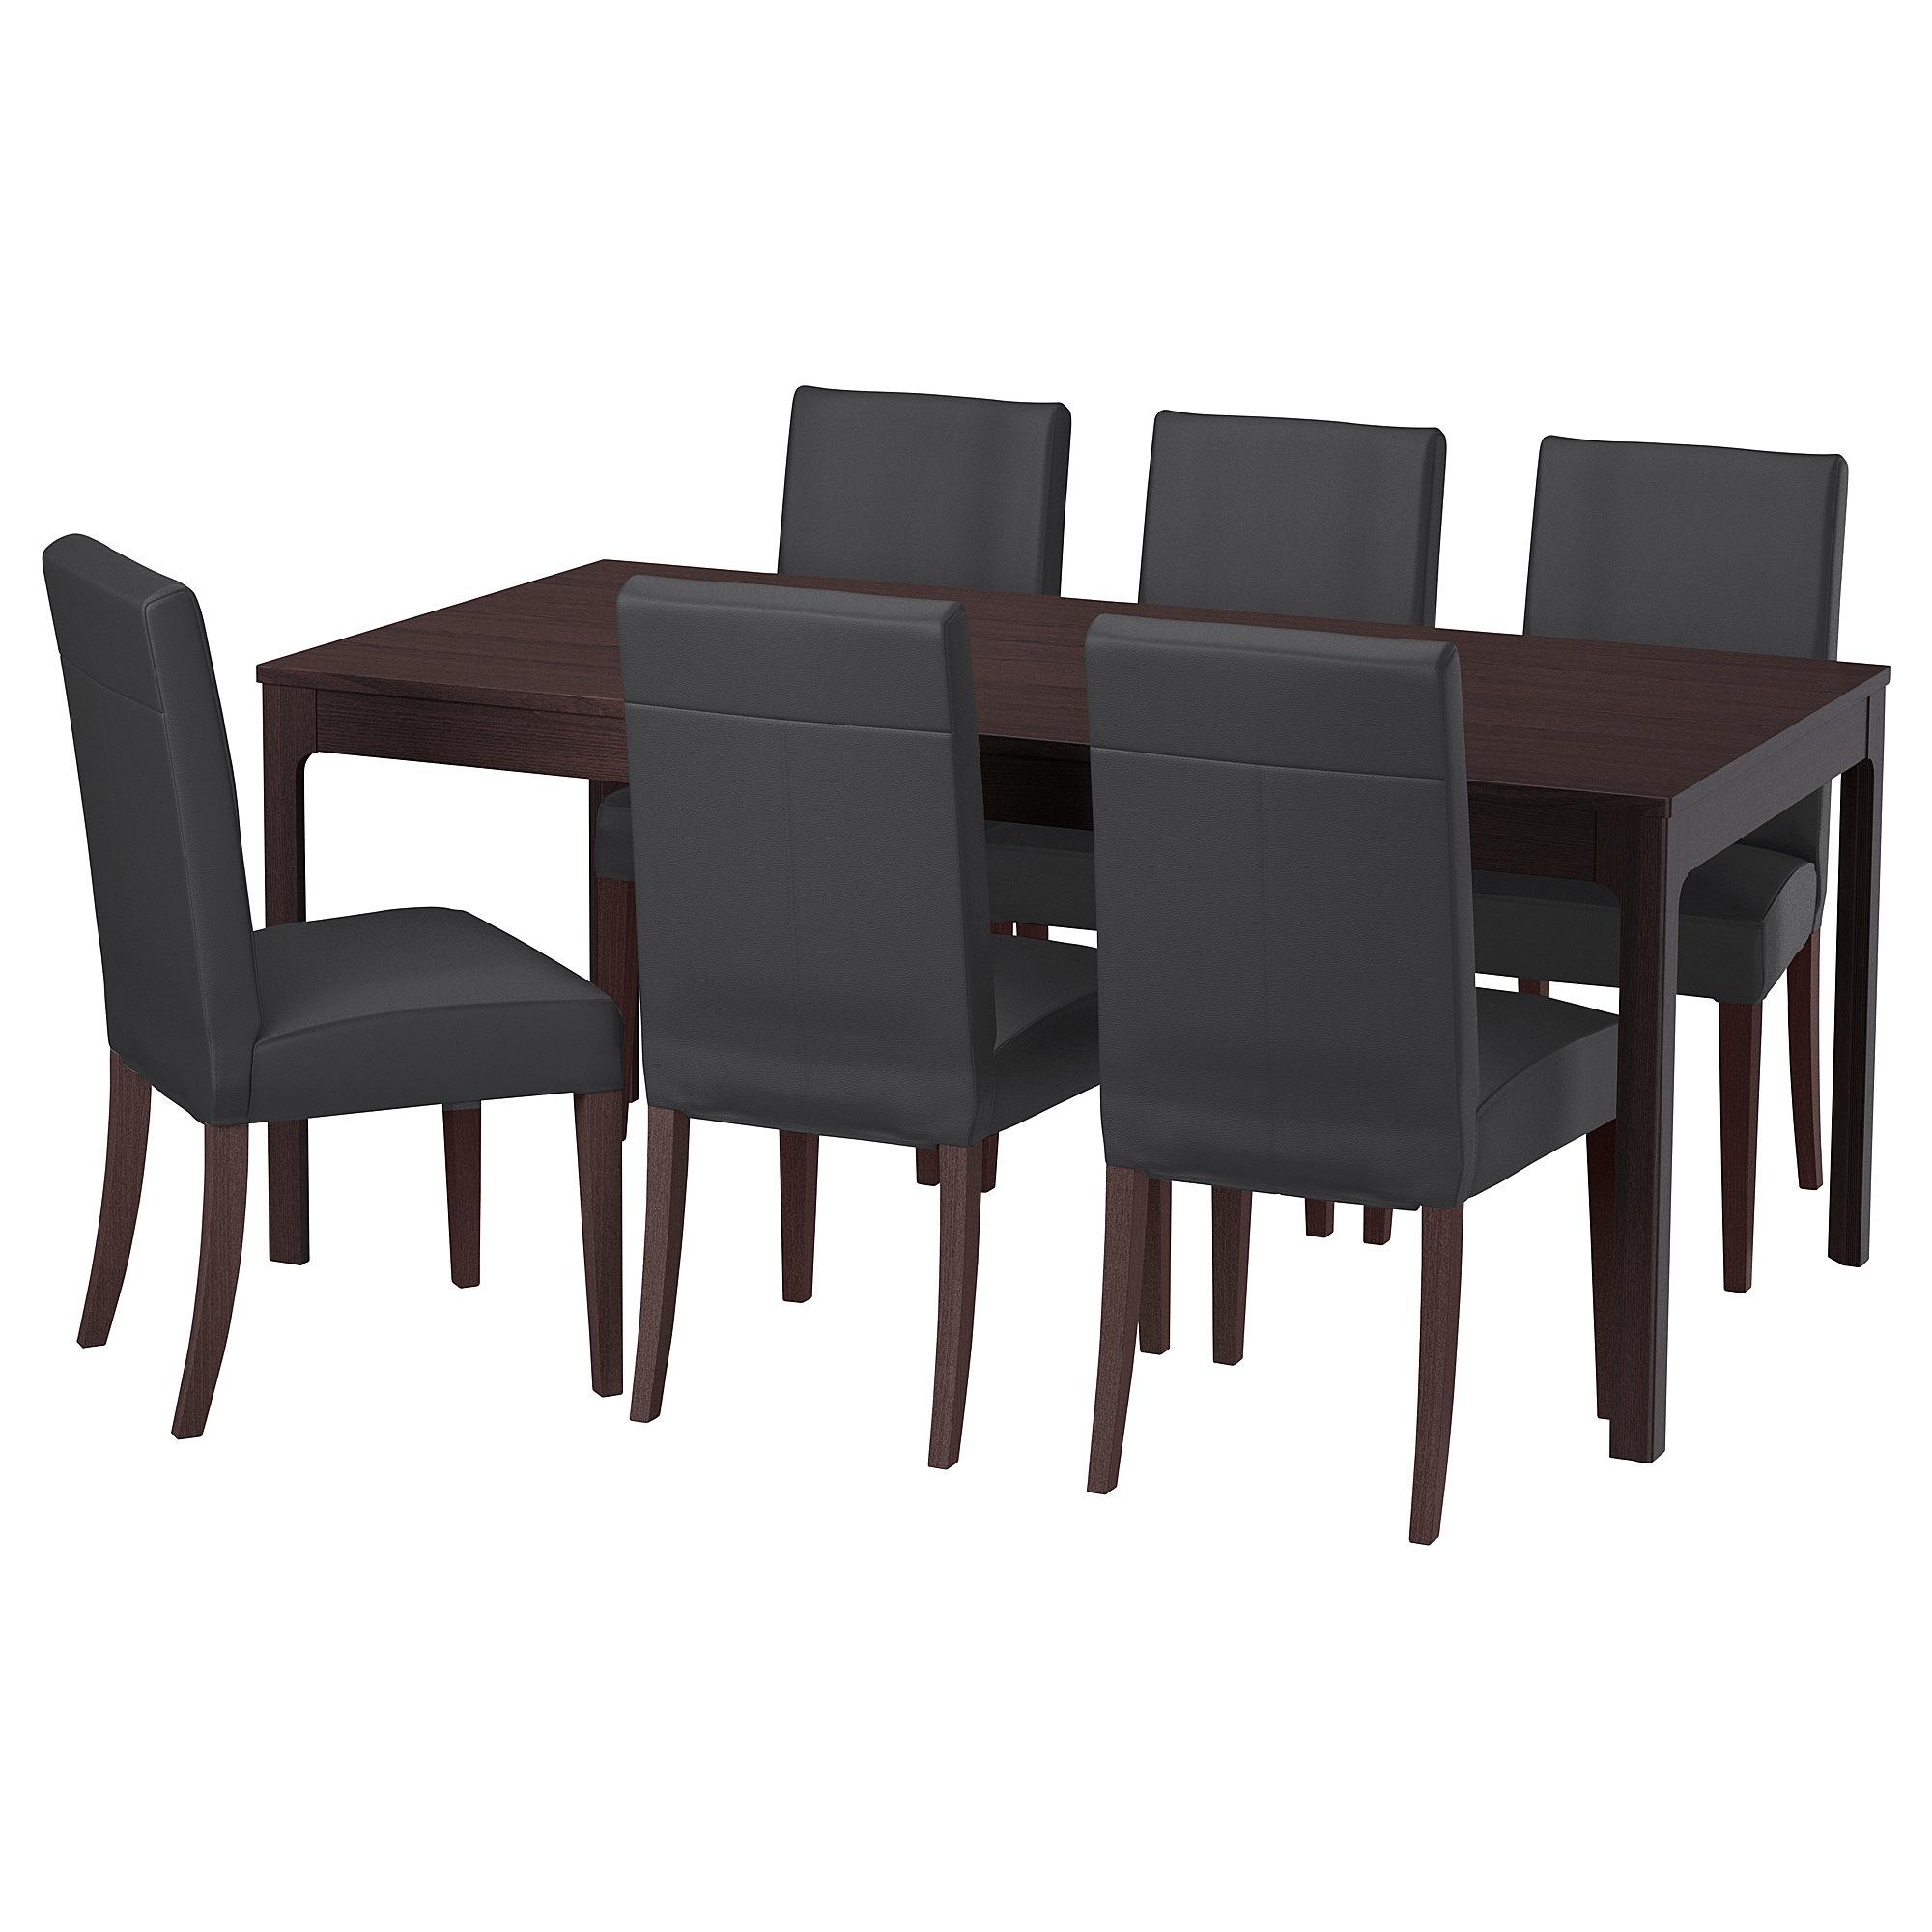 [ด่วน!! โปรโมชั่นมีจำนวนจำกัด] โต๊ะและเก้าอี้ 6 ตัว ชุดโต๊ะทานอาหาร 1-6 ที่นั่ง EKEDALEN / HENRIKSDAL